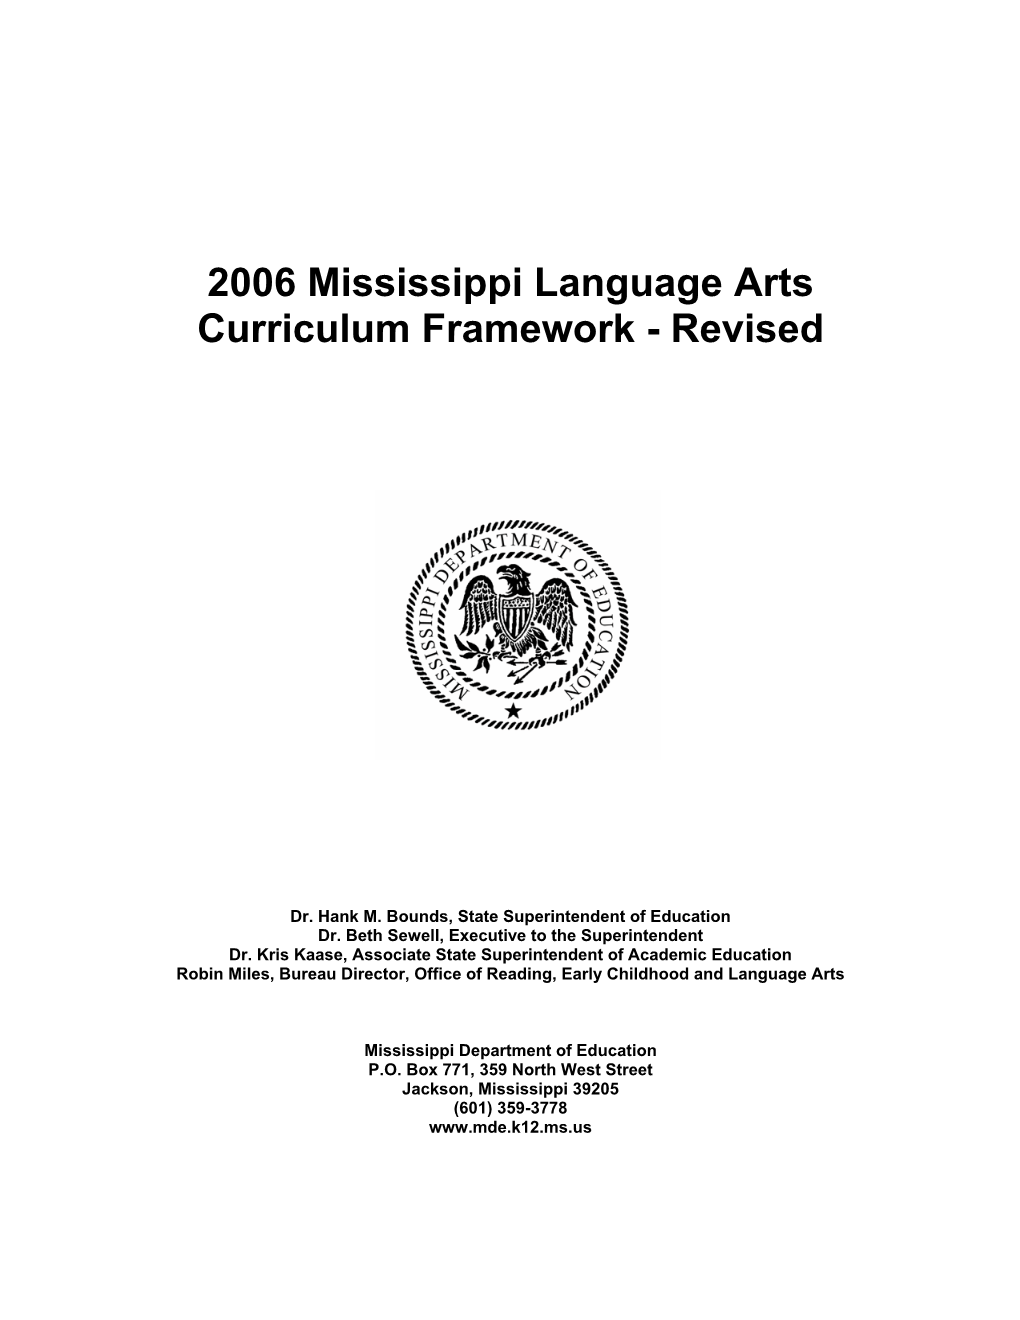 Mississippi Language Arts Framework-Revised